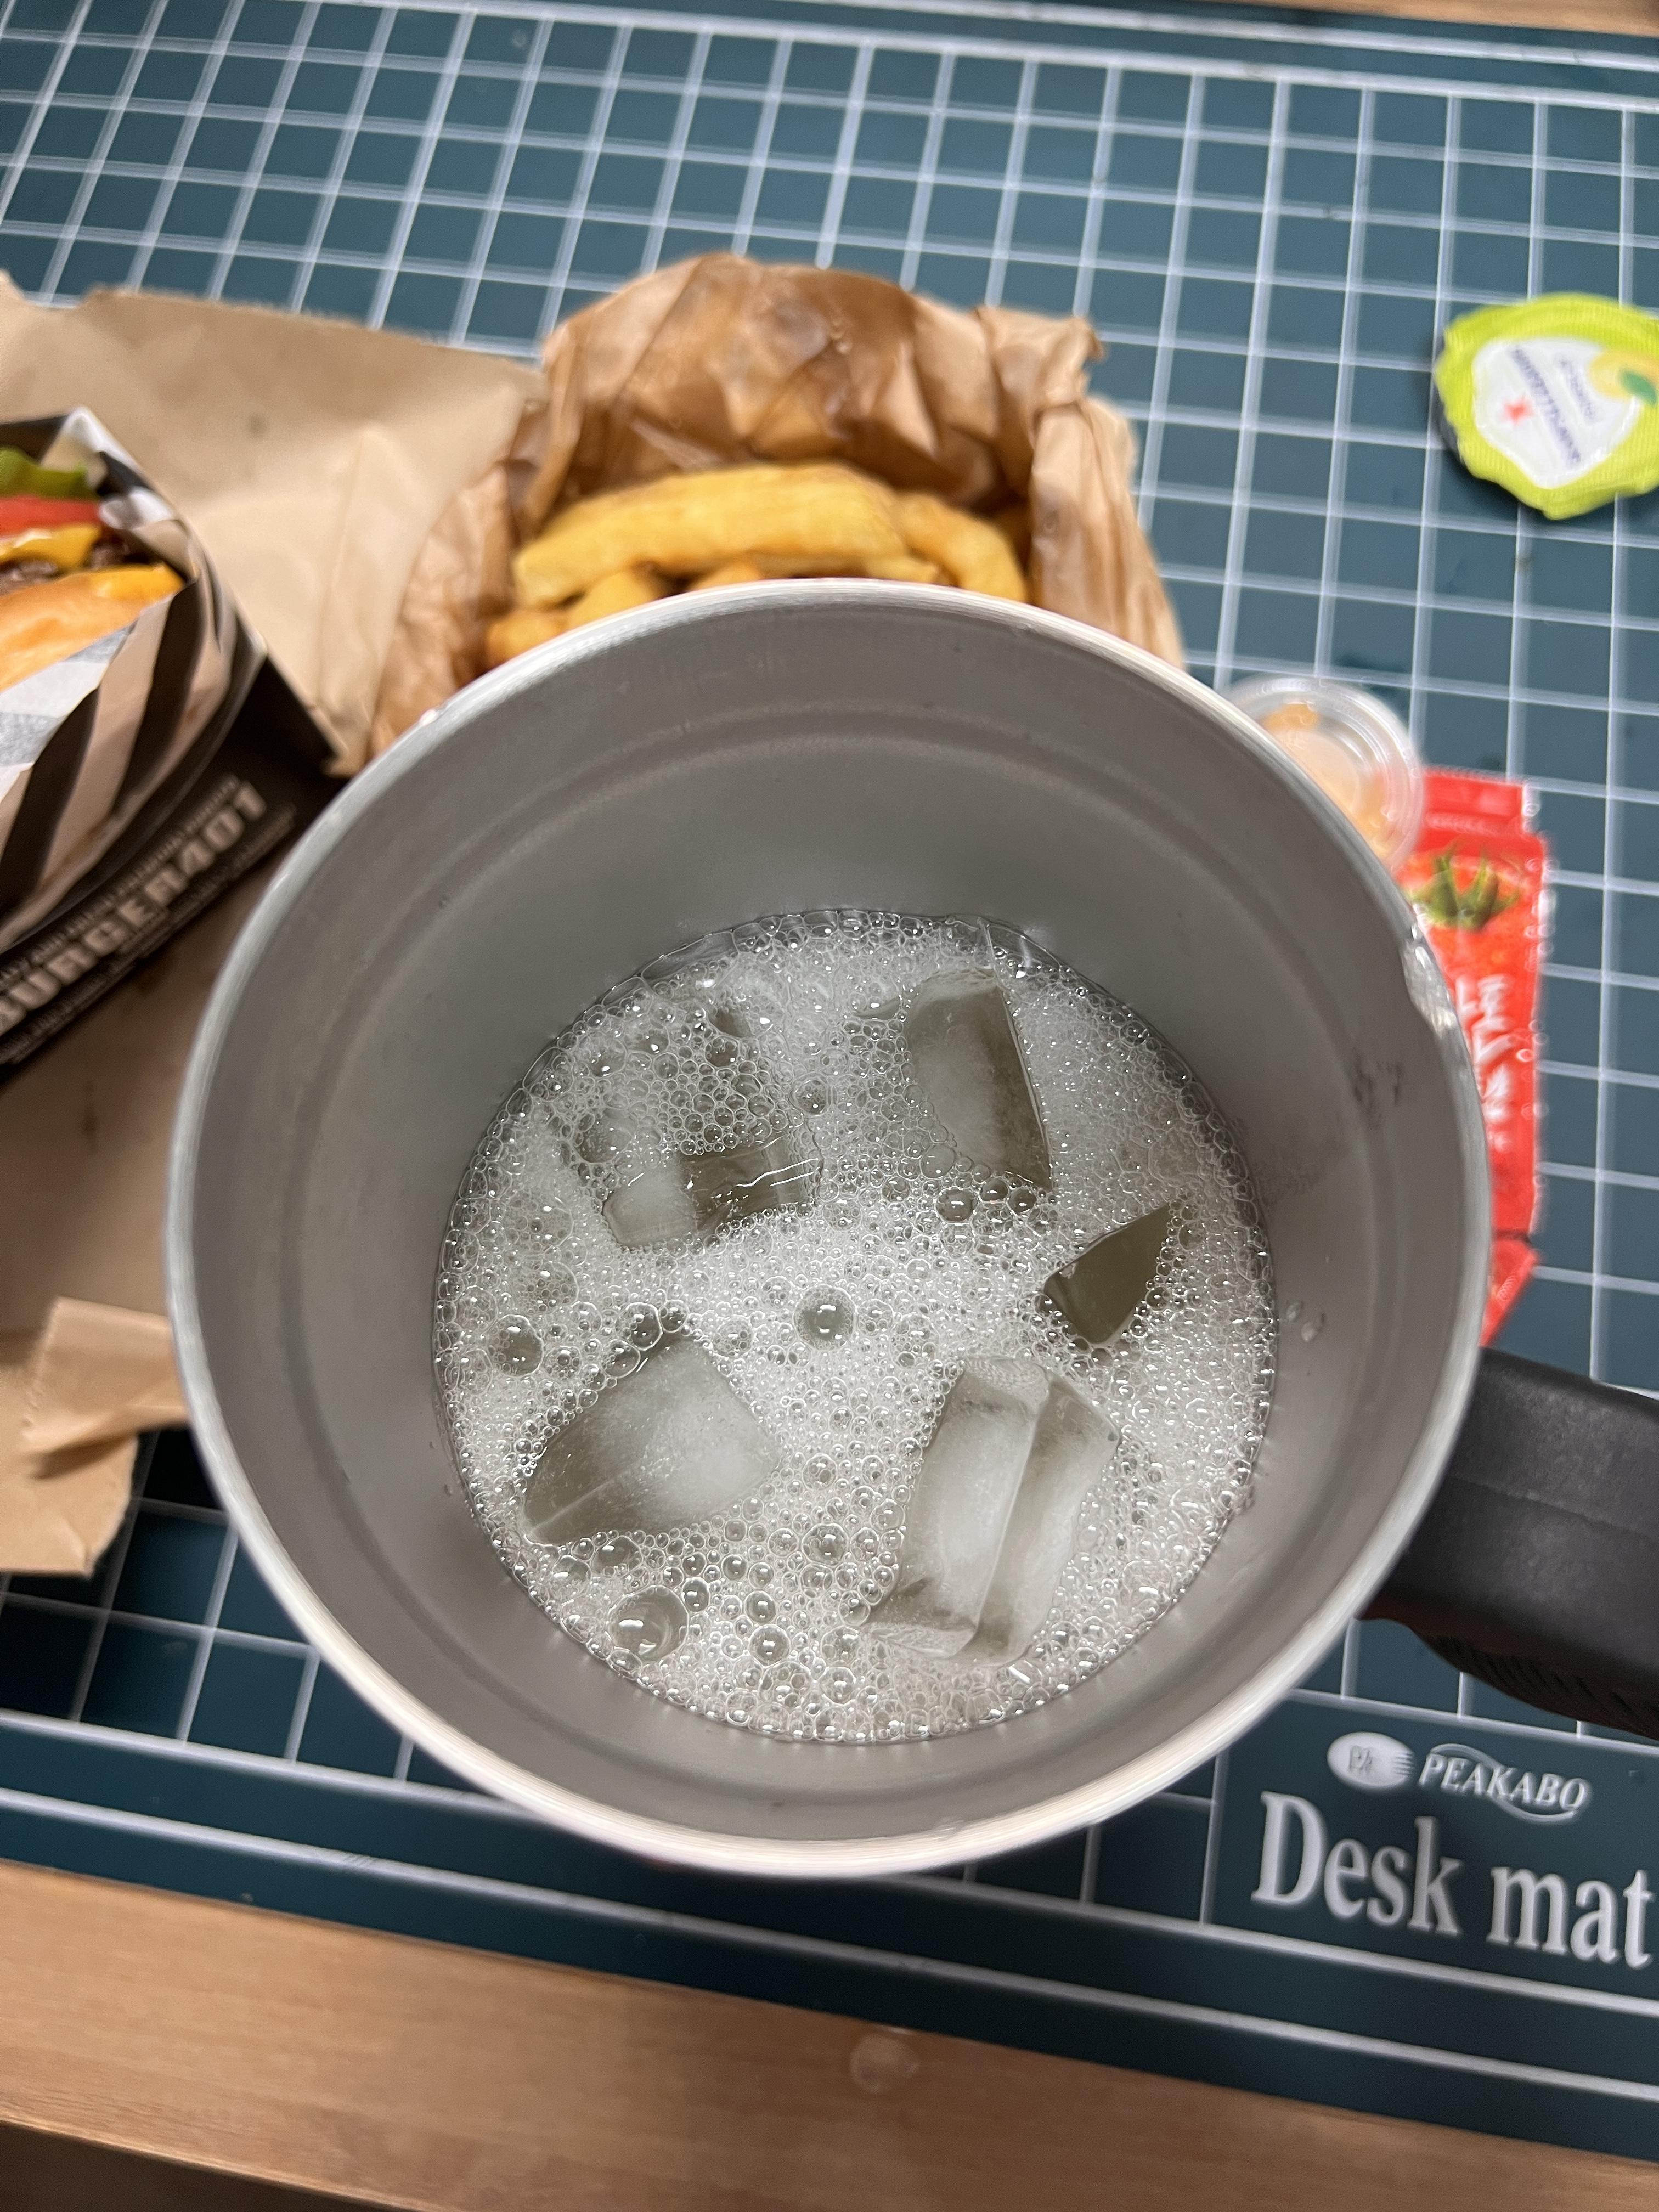 스테인리스 컵에 담겨진 산페그리노 폼펠모 그린 자몽과 얼음들